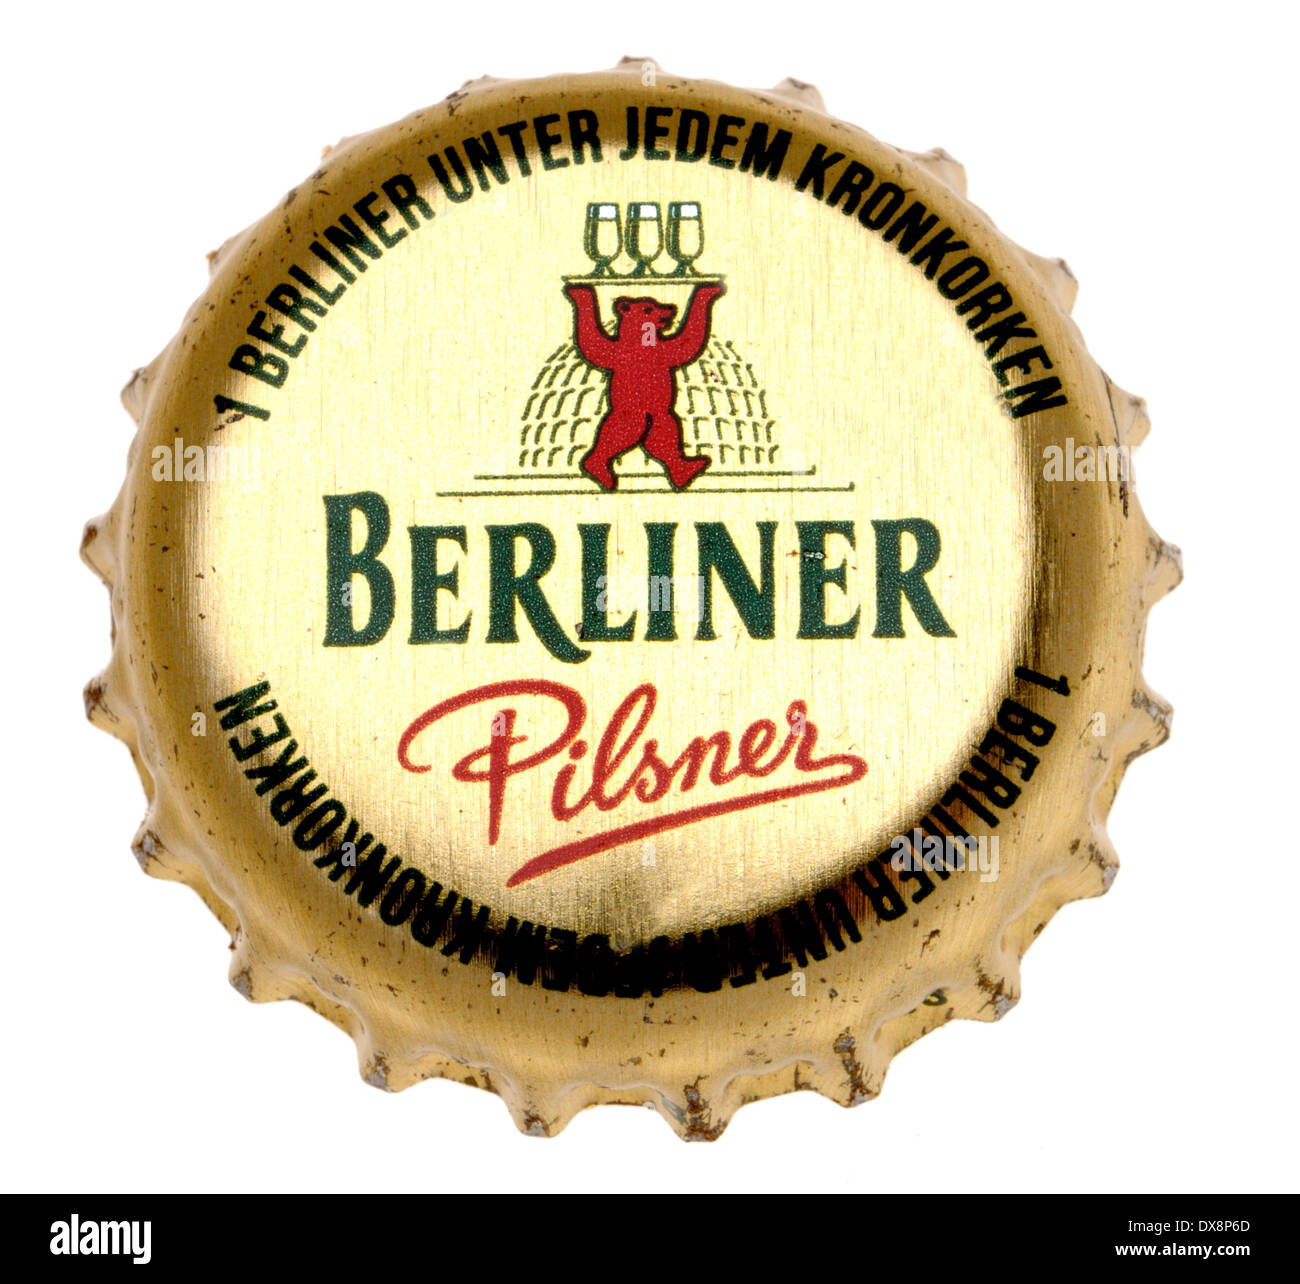 Beer bottle cap - Berliner Pilsner (Germany) Stock Photo